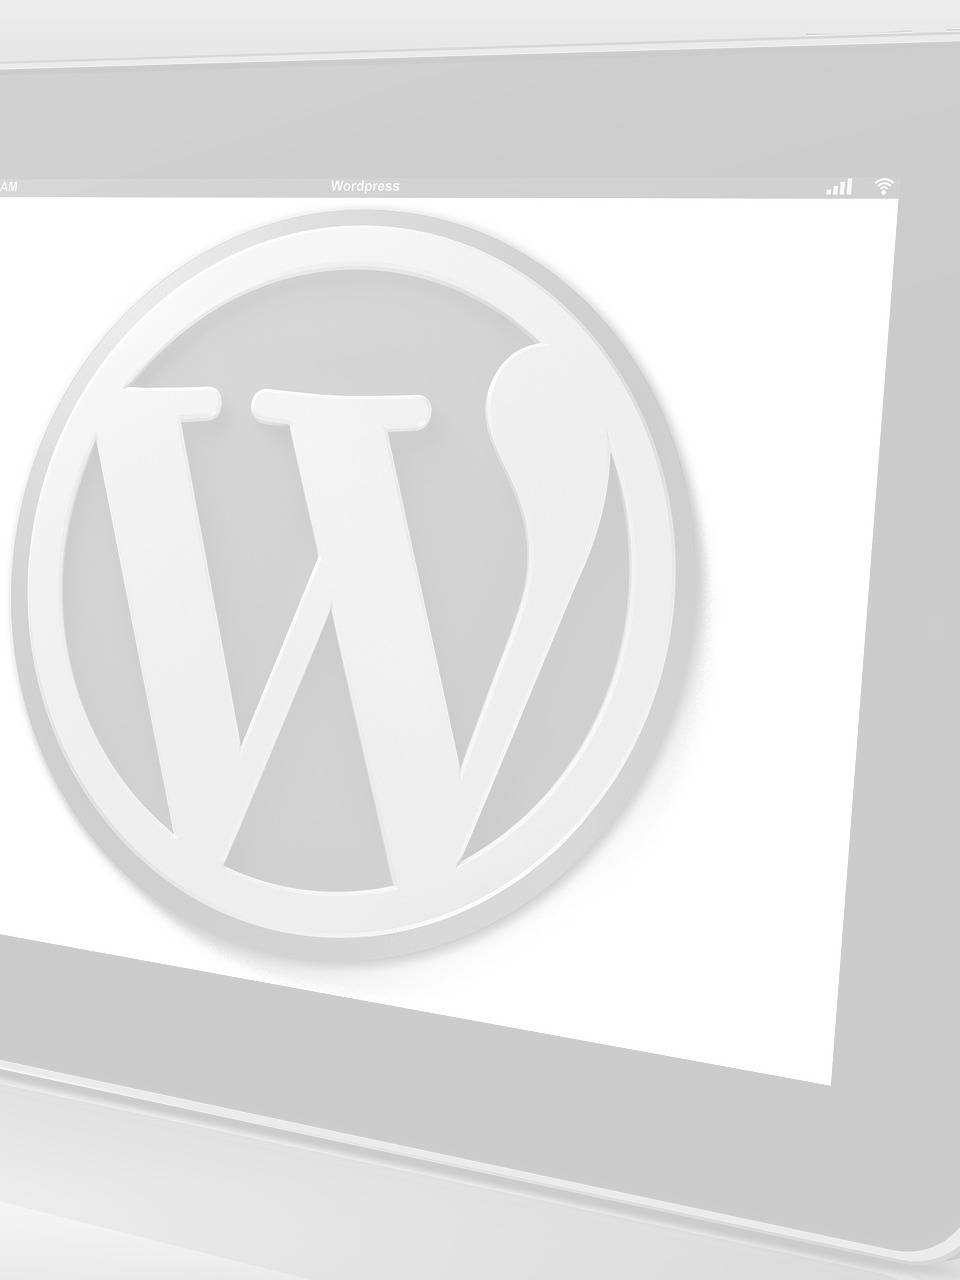 blog gratuito para diseño web de wordpress